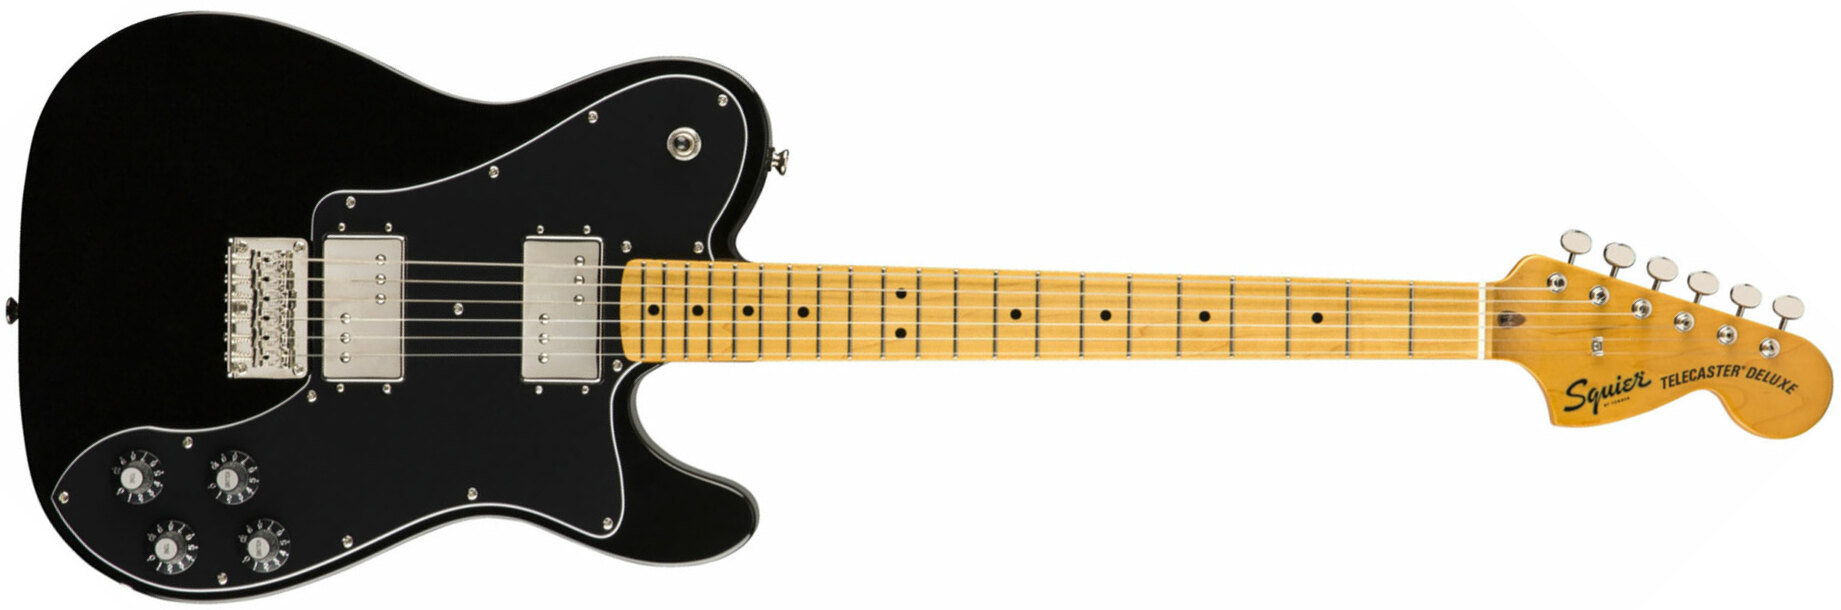 Squier Tele Deluxe Classic Vibe 70s 2019 Hh Mn - Black - Televorm elektrische gitaar - Main picture